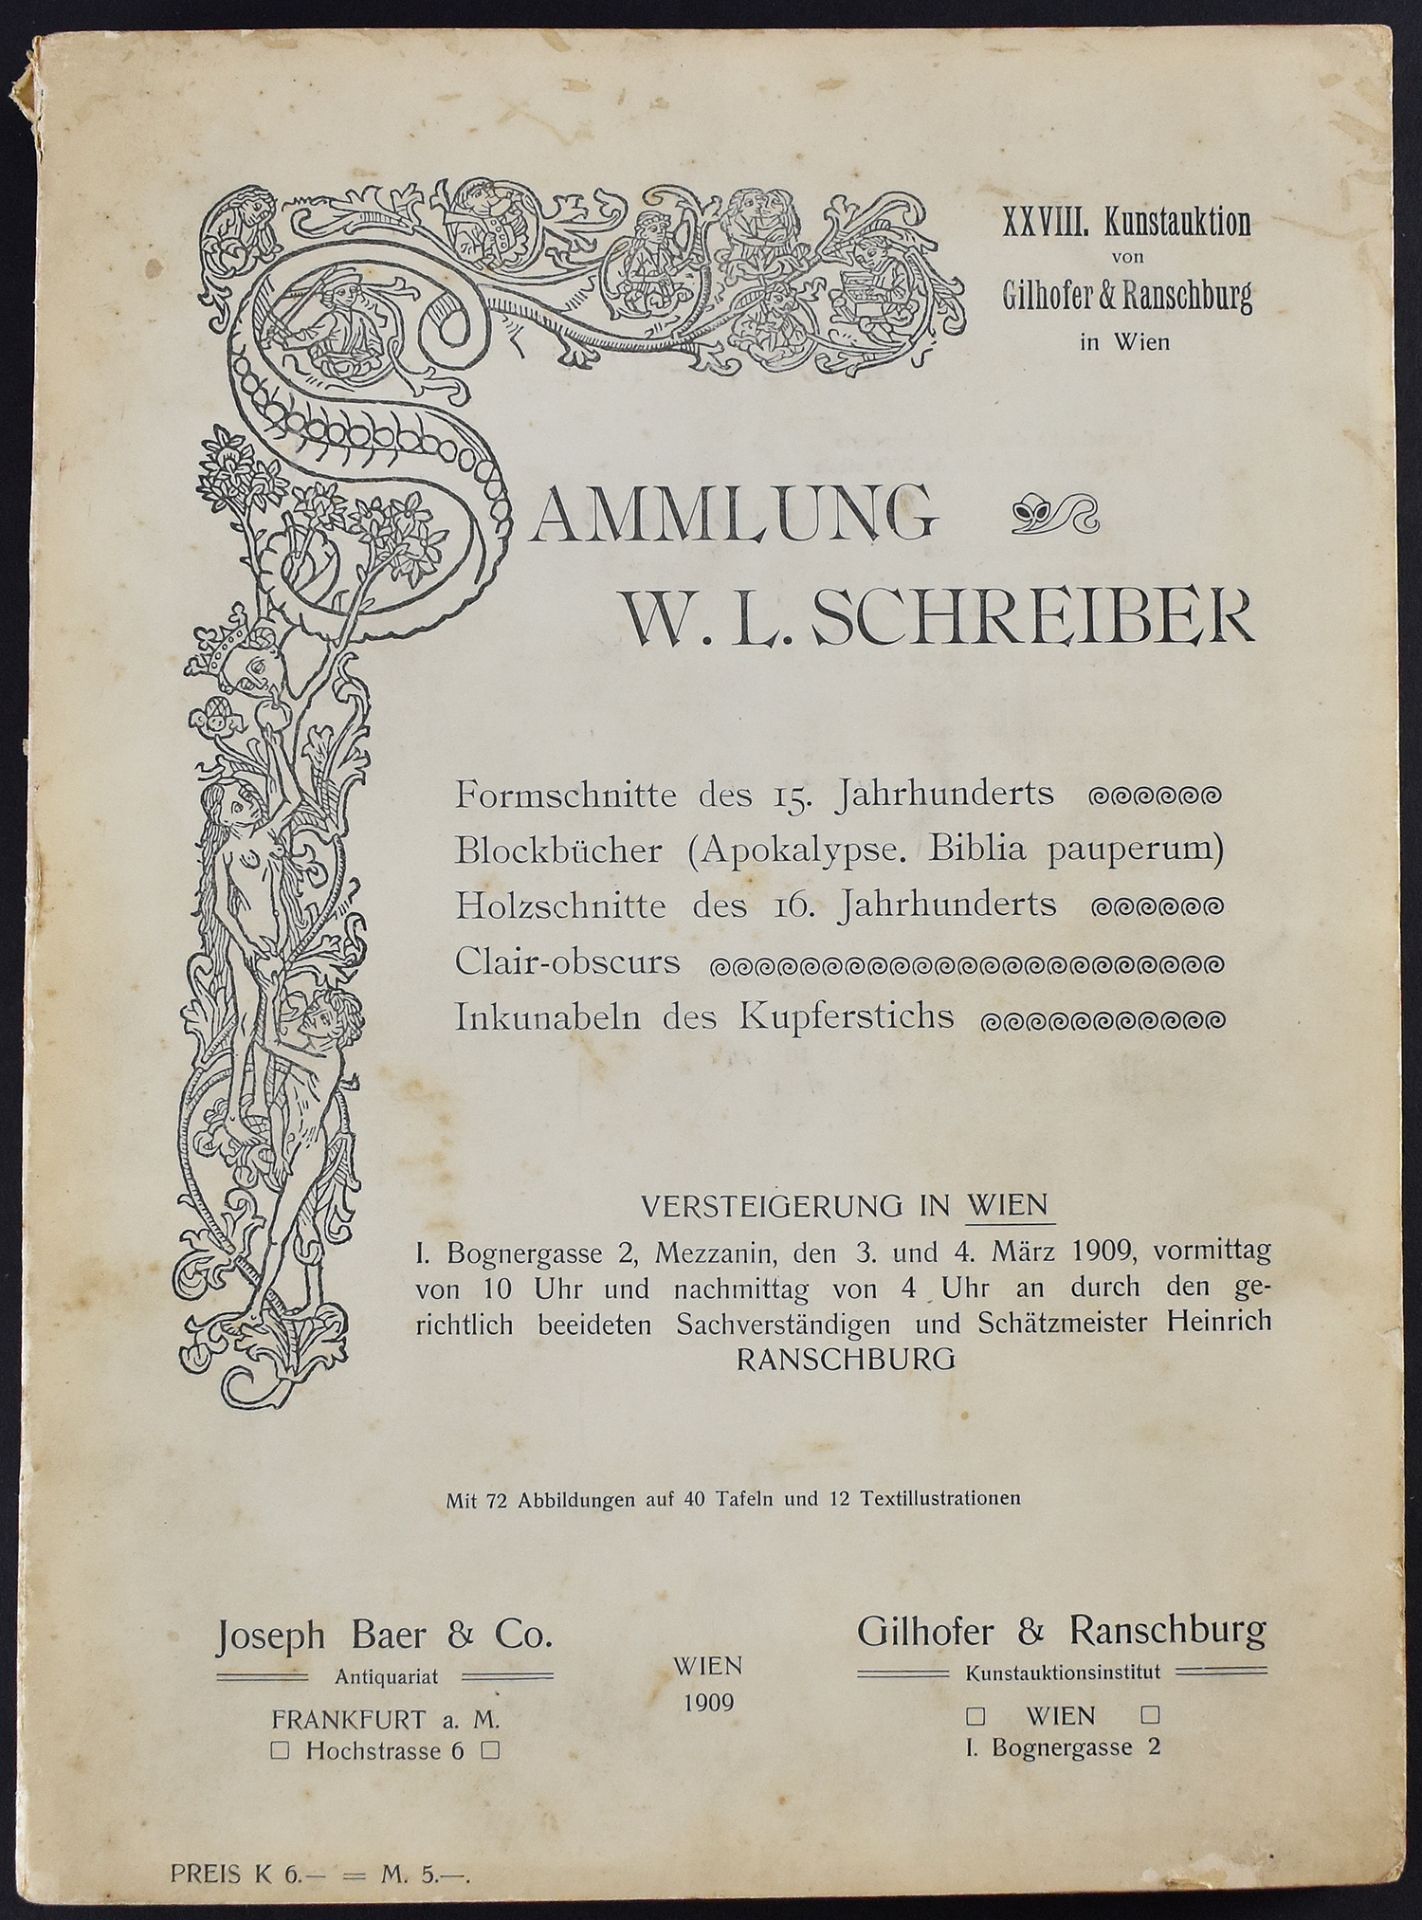 Gilhofer & Ranschburg Wien 1909. Sammlung des Herrn Prof. W.L. Schreiber. Monumenta Xylographica.